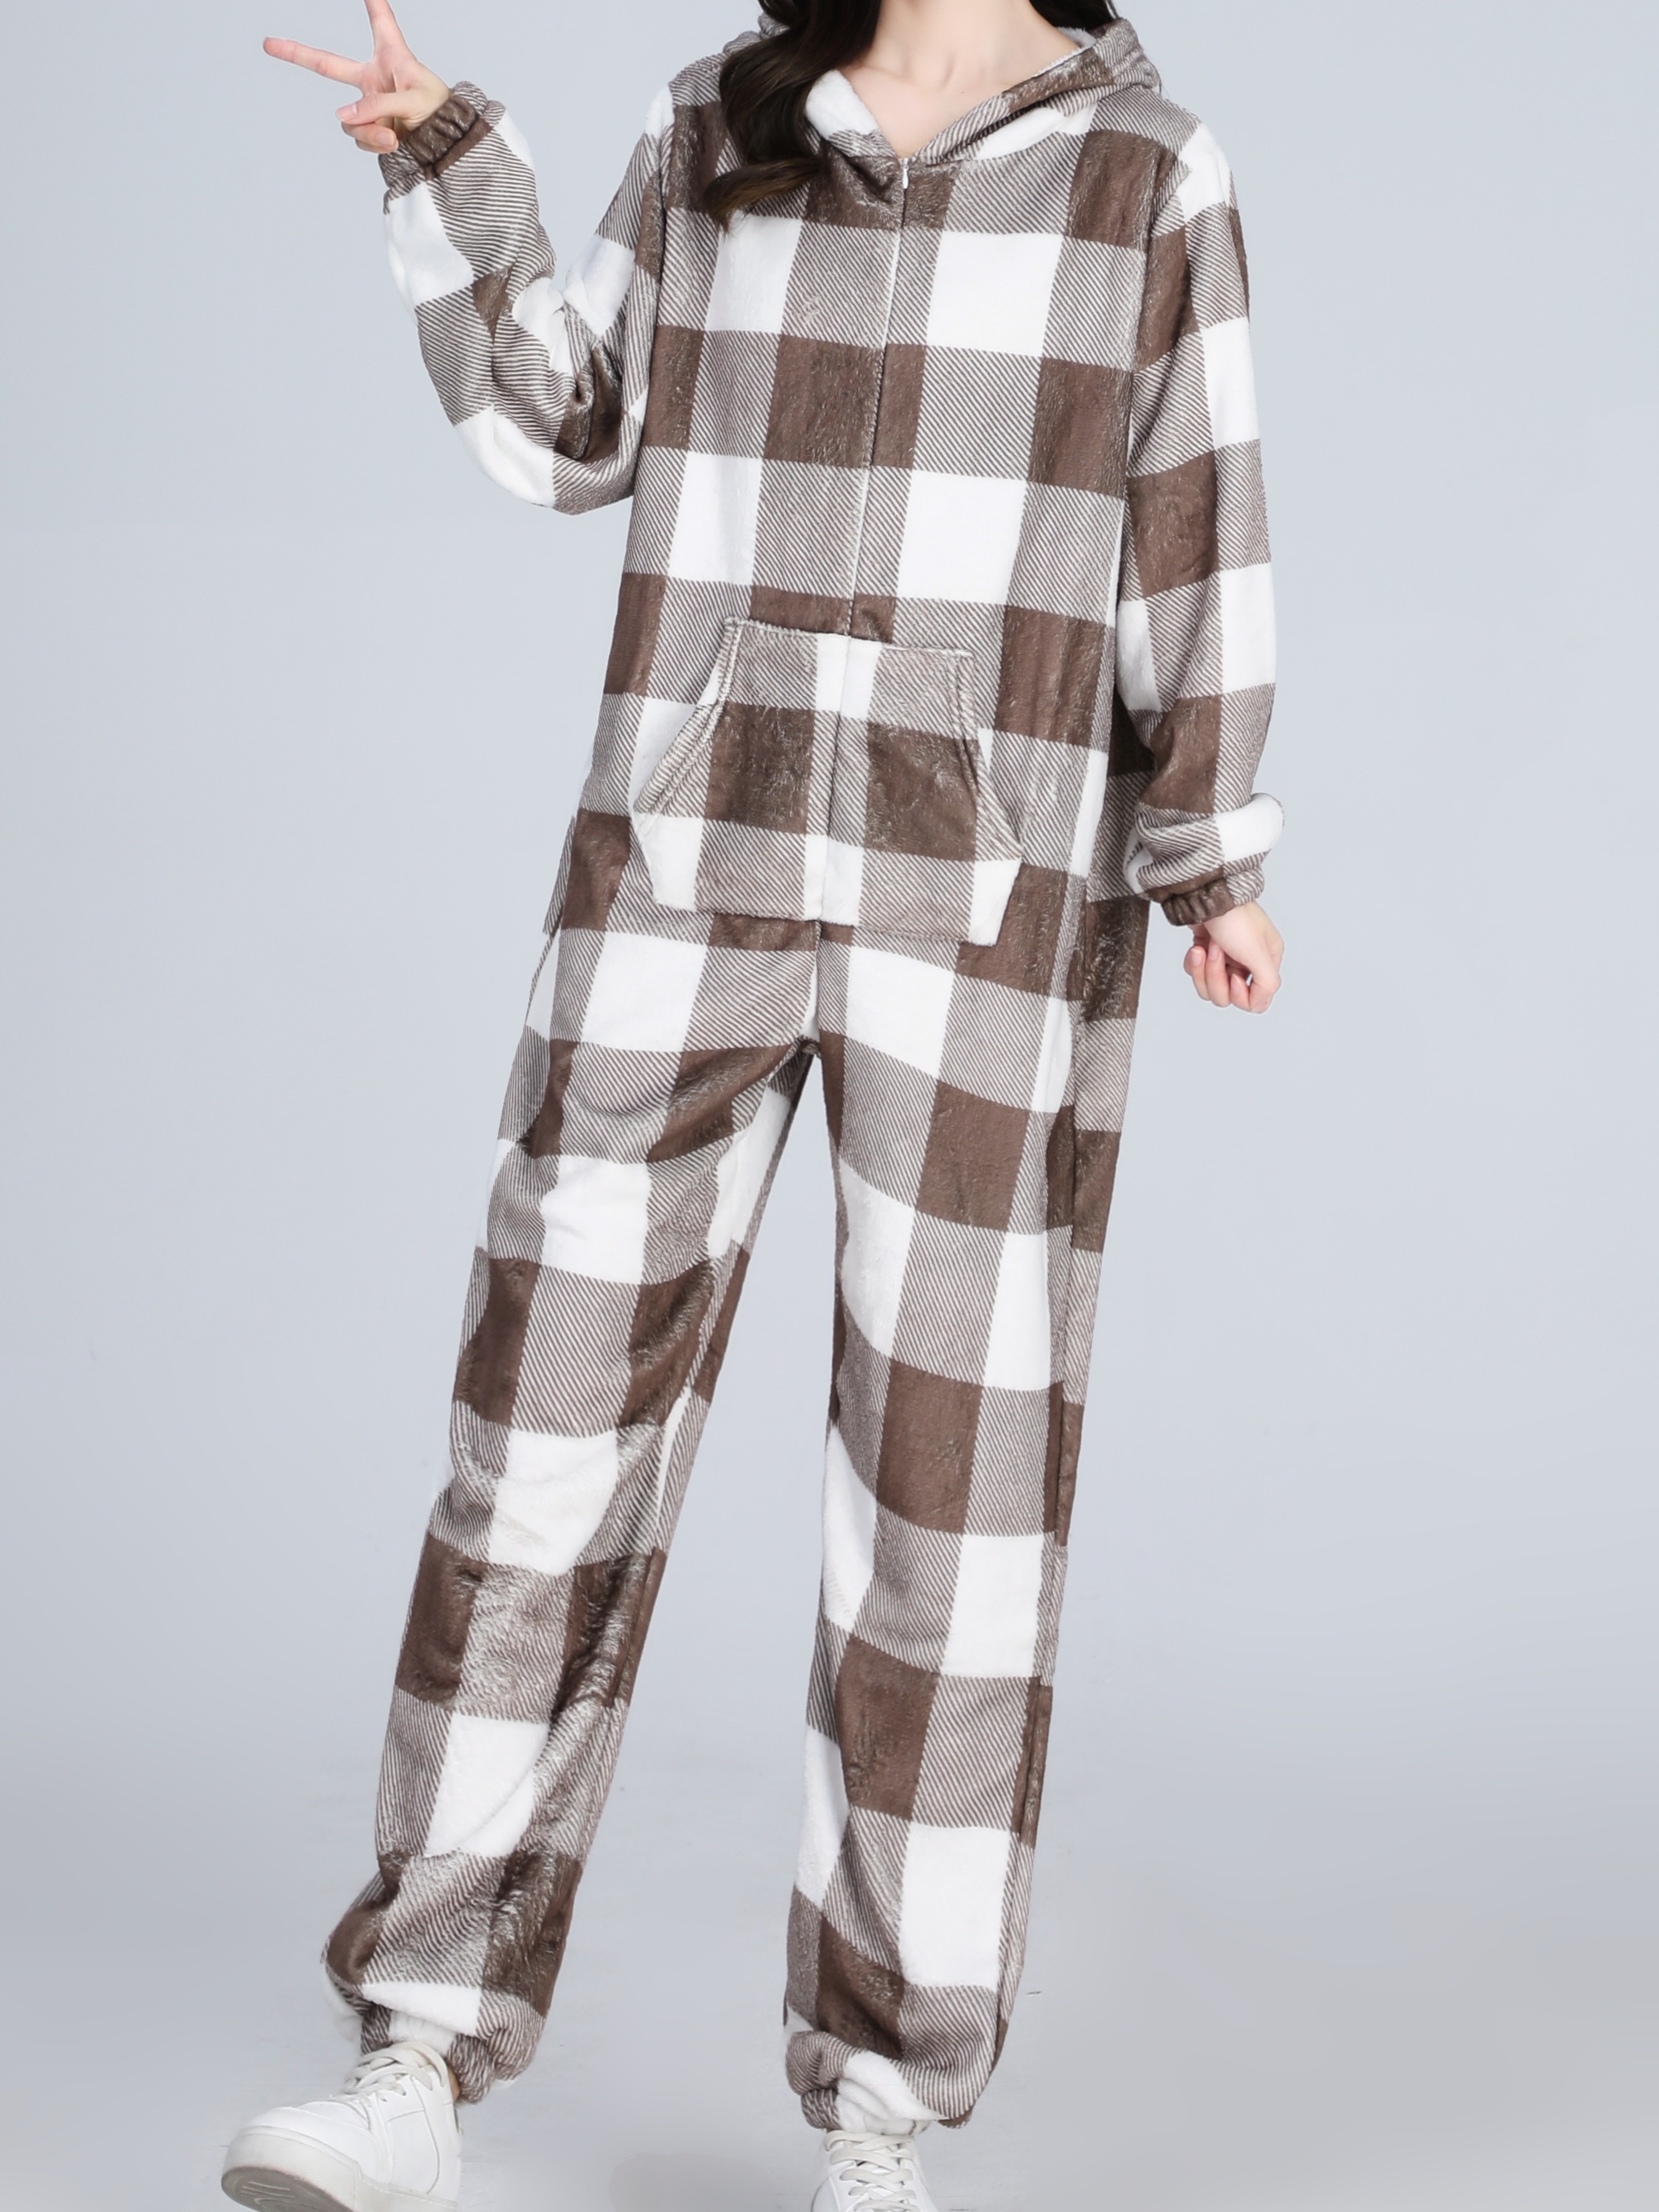 One Piece Pajamas for Women Plus Size, Hooded Zip Up Fuzzy Fleece Warm  Onesie Sleepwear Winter Plush Jumpsuit Romper